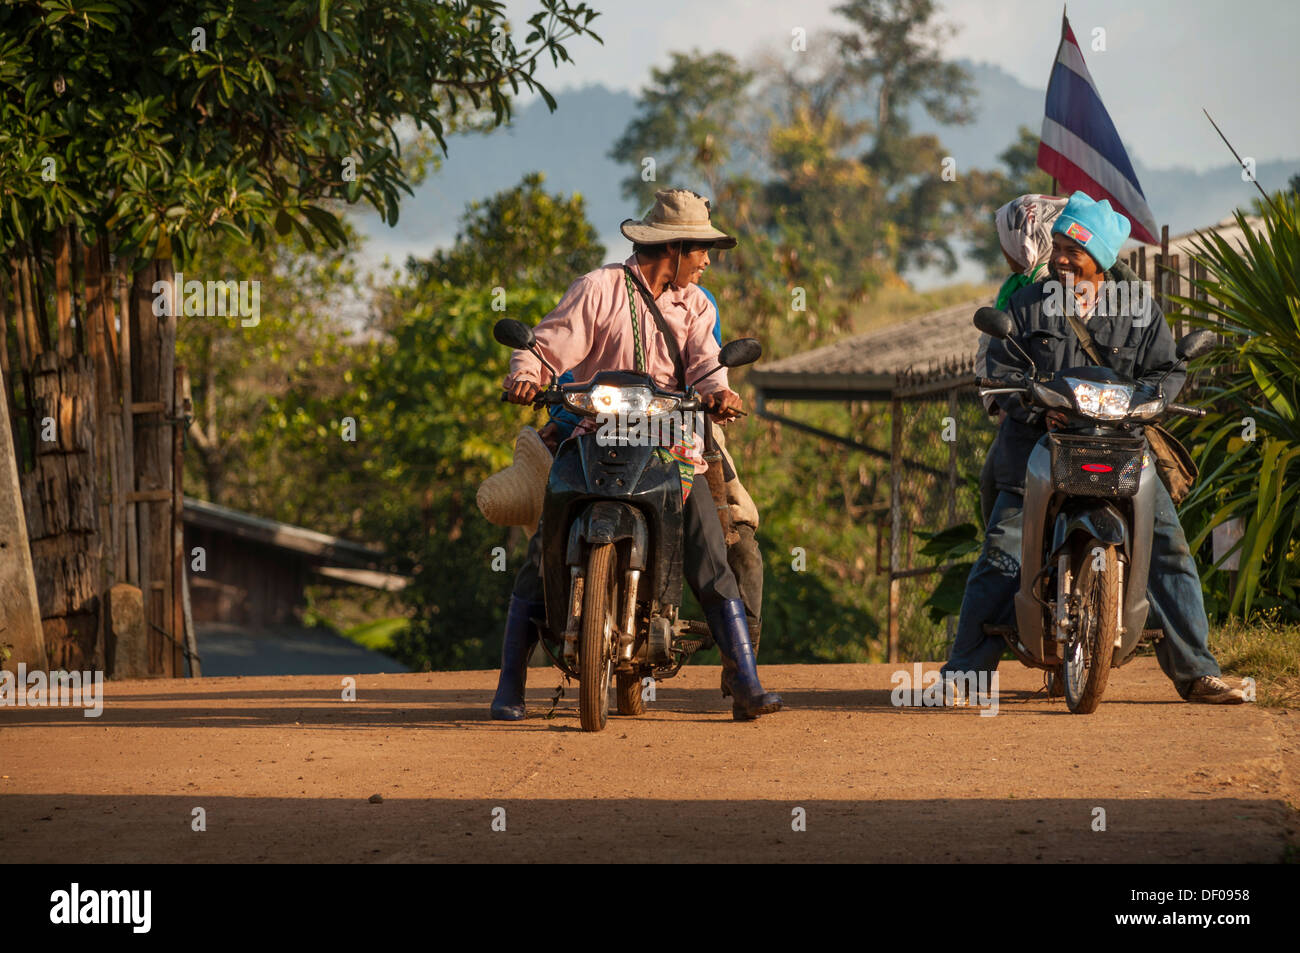 Colle persone della tribù, popolo Lisu, una minoranza etnica, uomini sulle loro moto in un villaggio nel nord della Thailandia, Tailandia, Asia Foto Stock